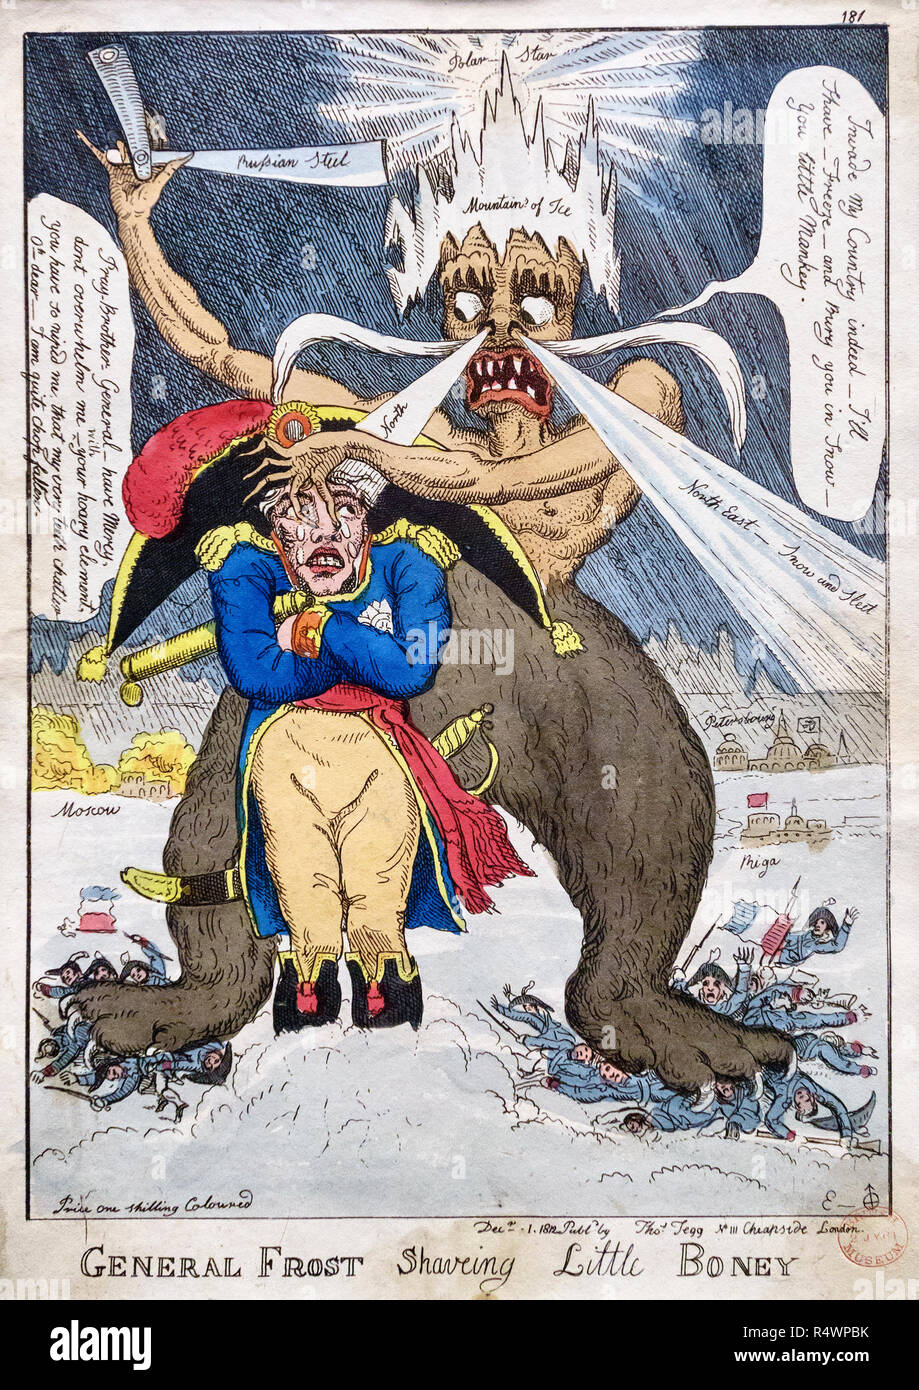 L'Empereur Napoléon étant à peu près "haved' par l'âpre hiver russe, représenté comme un démon de coiffure. Il fait référence à Napoléon en 1812 Retraite de Moscou Banque D'Images